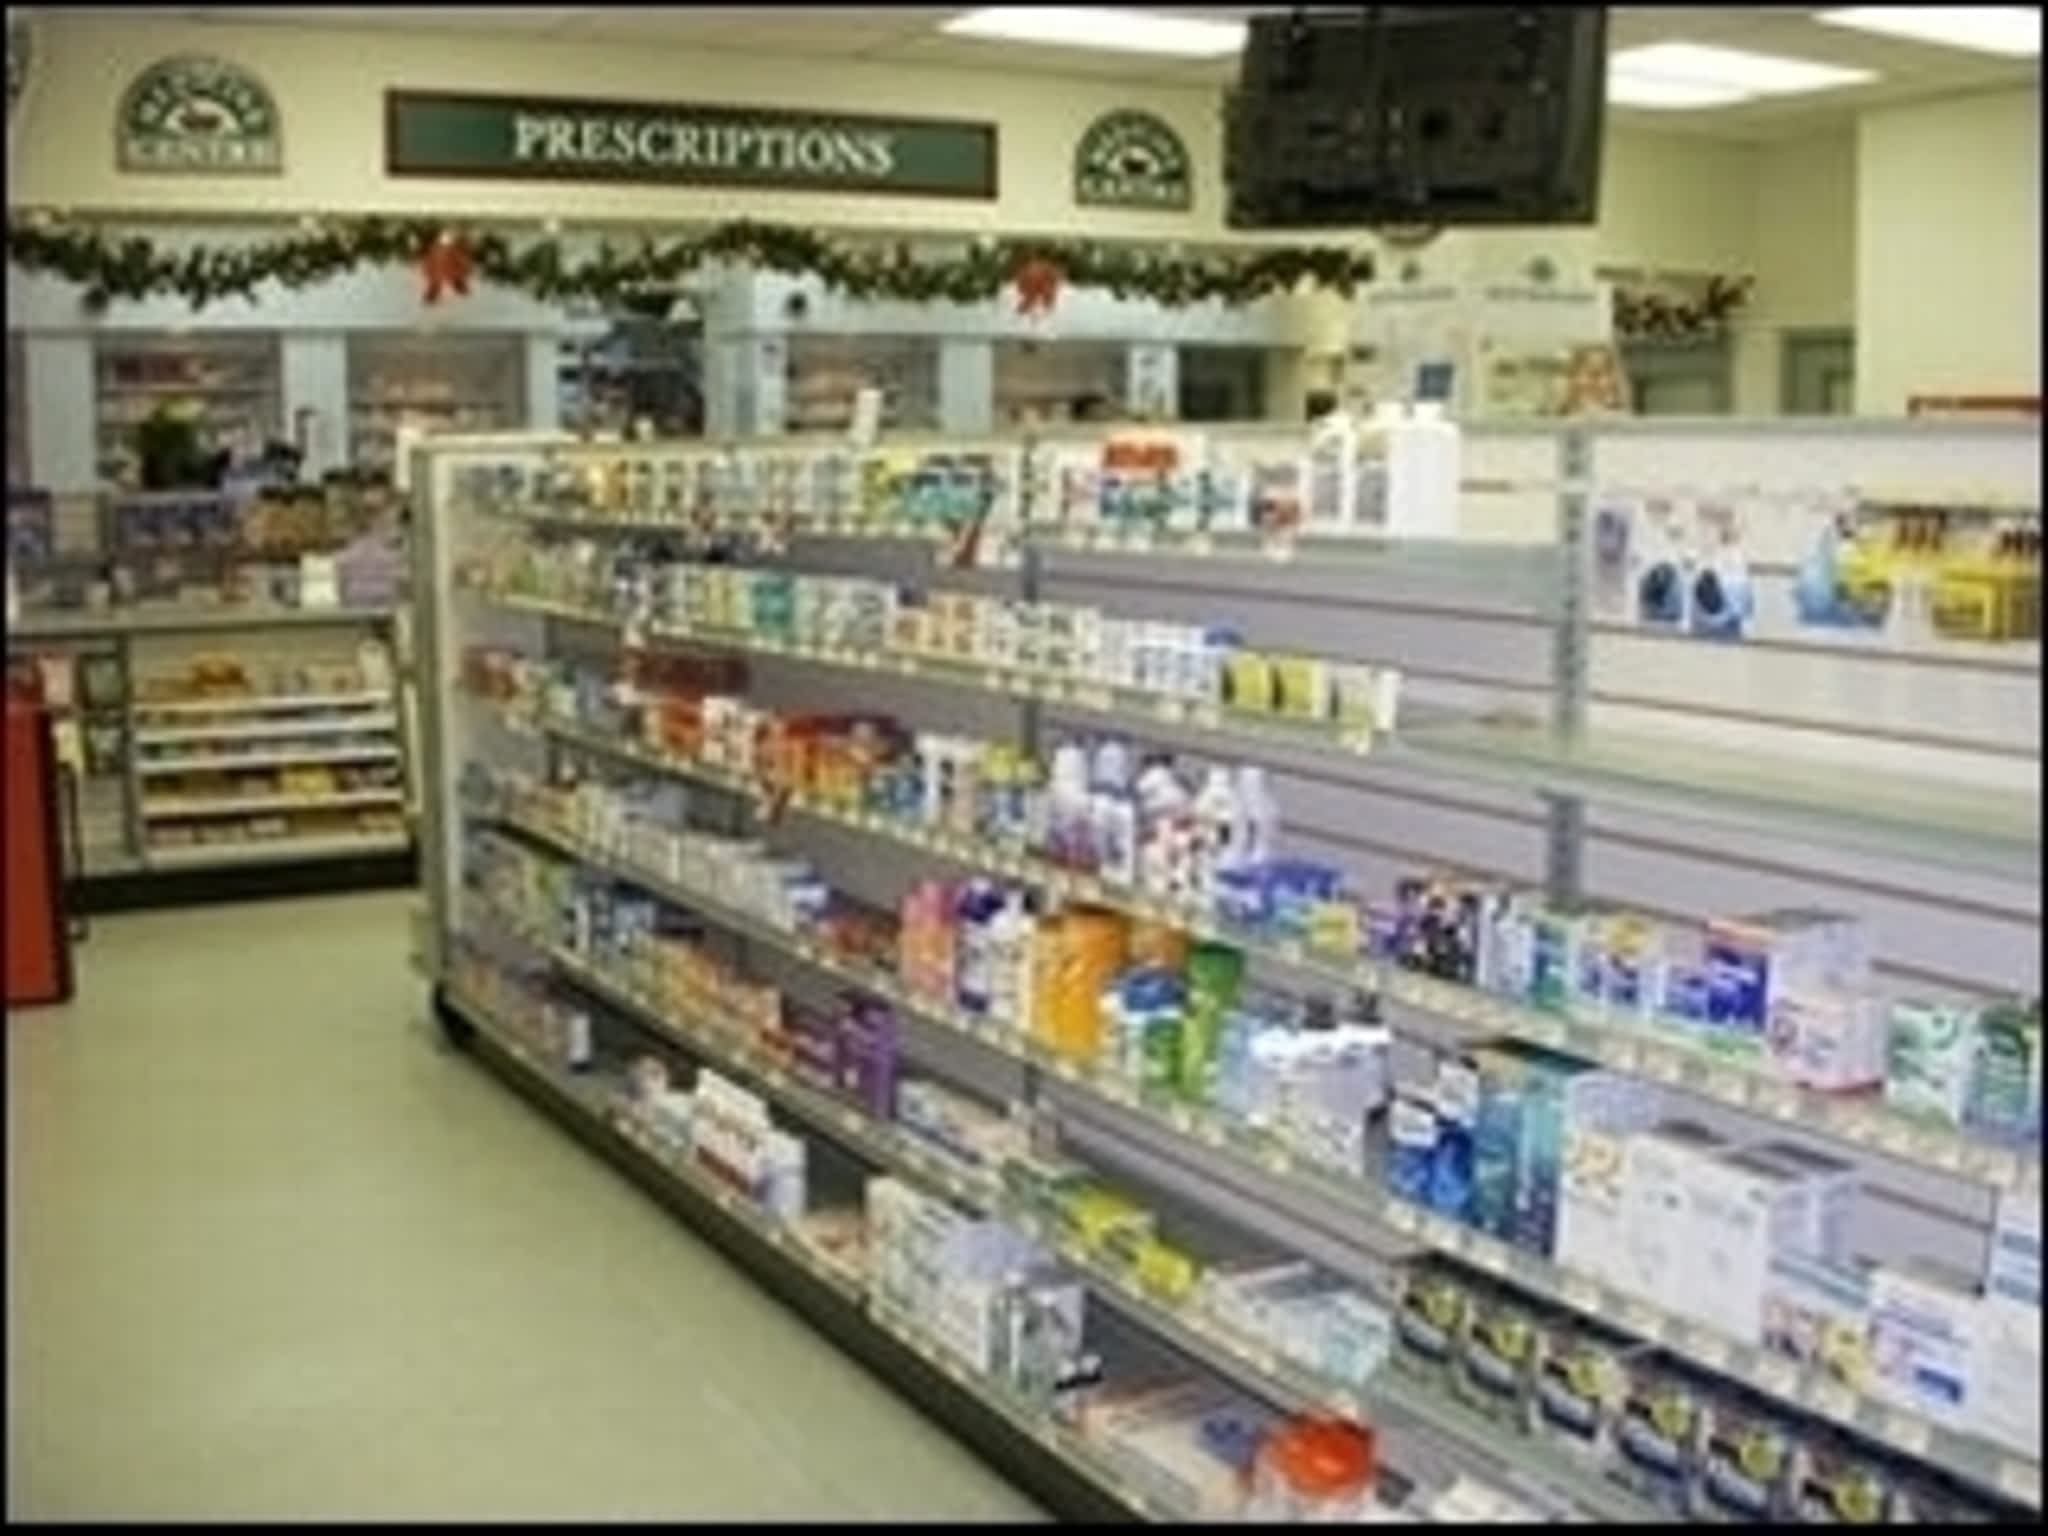 photo Macdonald's Prescriptions